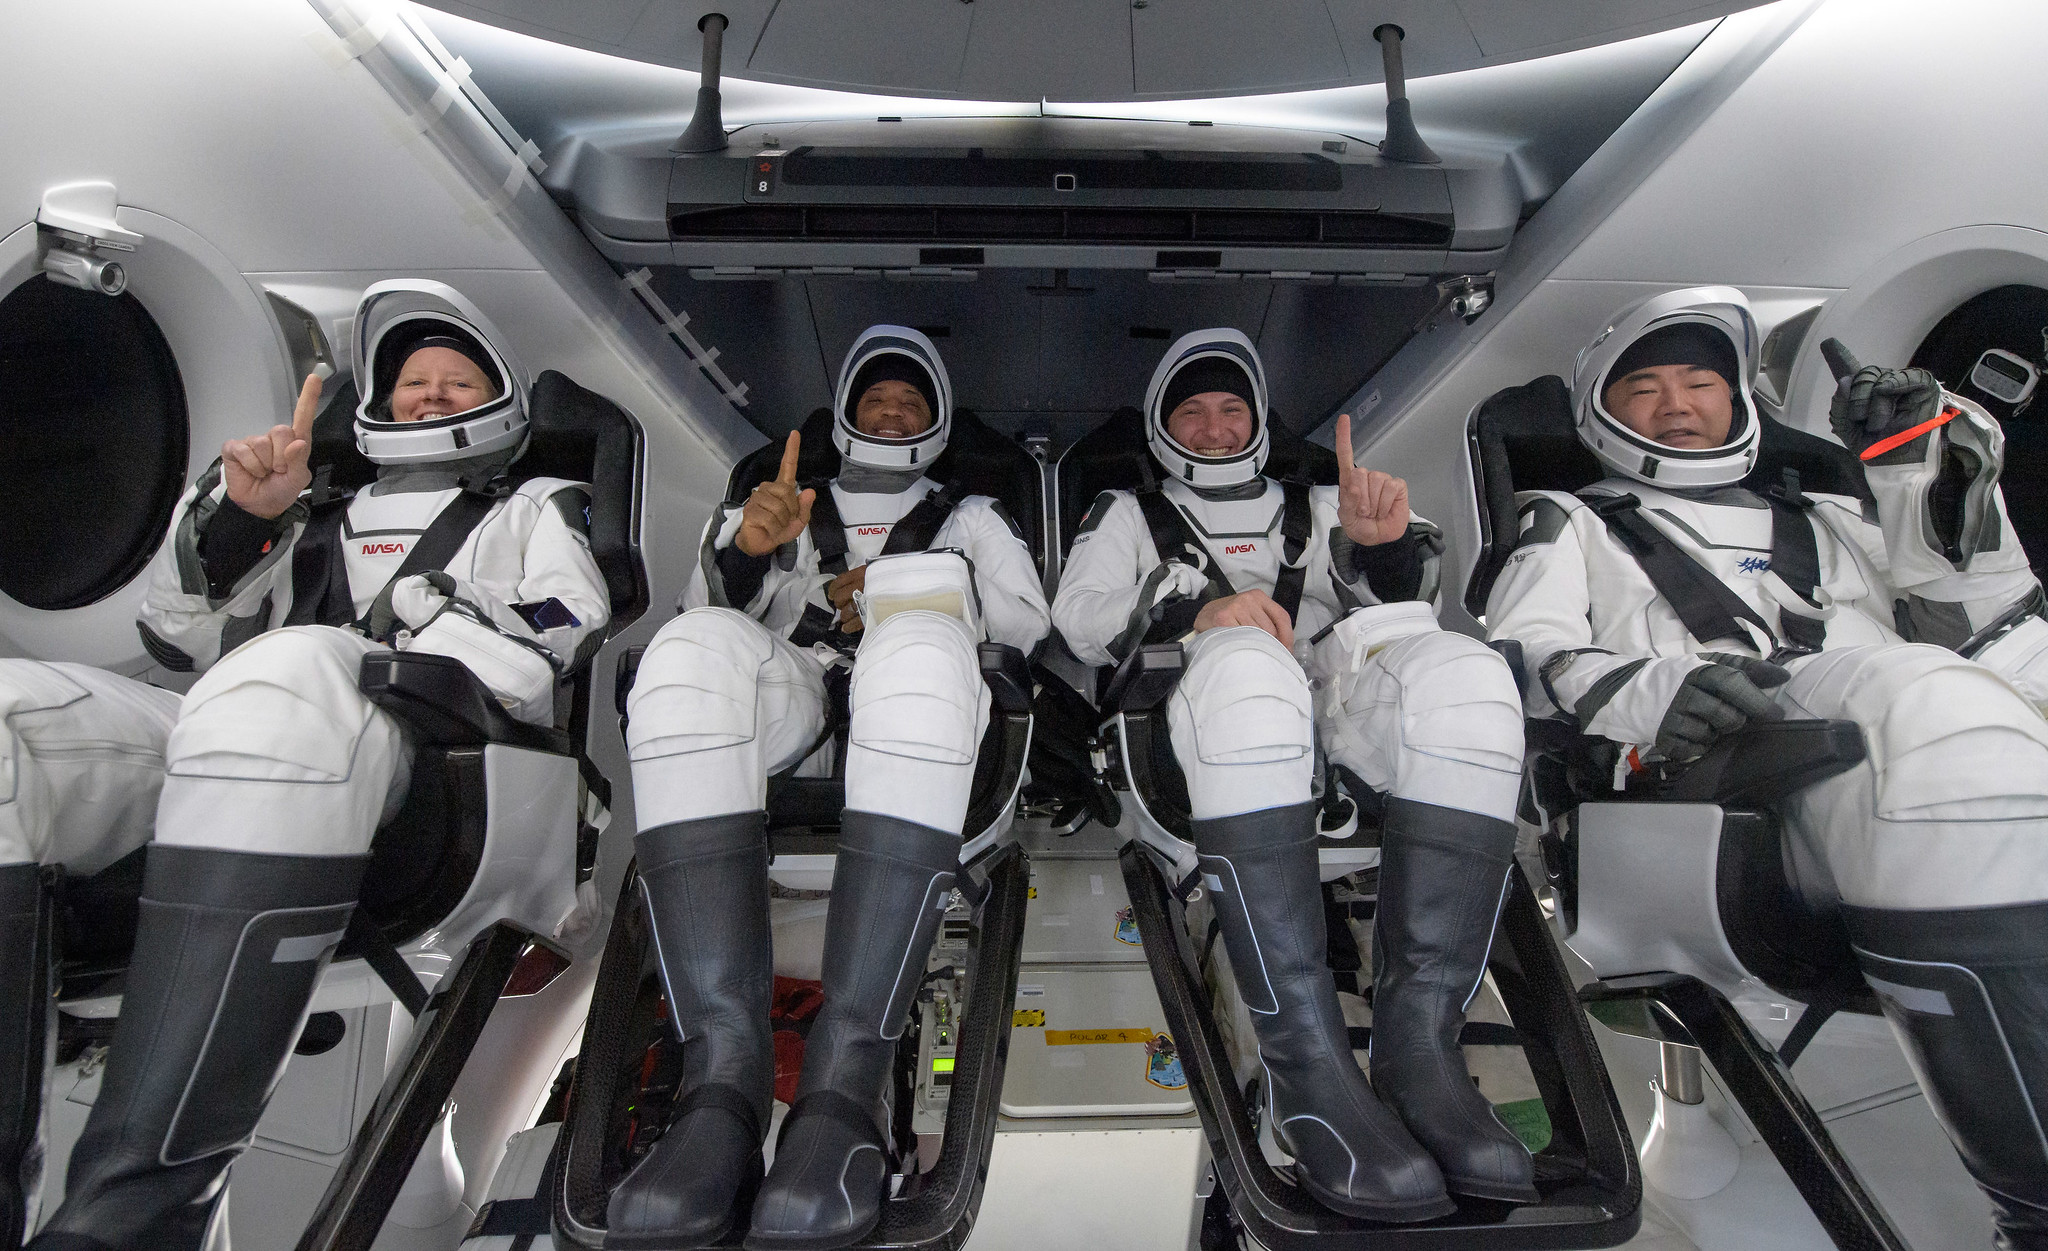 De izquierda a derecha, los astronautas de la NASA Shannon Walker, Victor Glover, Mike Hopkins y el astronauta de la Agencia de Exploración Aeroespacial de Japón (JAXA) Soichi Noguchi vistos dentro del Crew Dragon de SpaceX. 